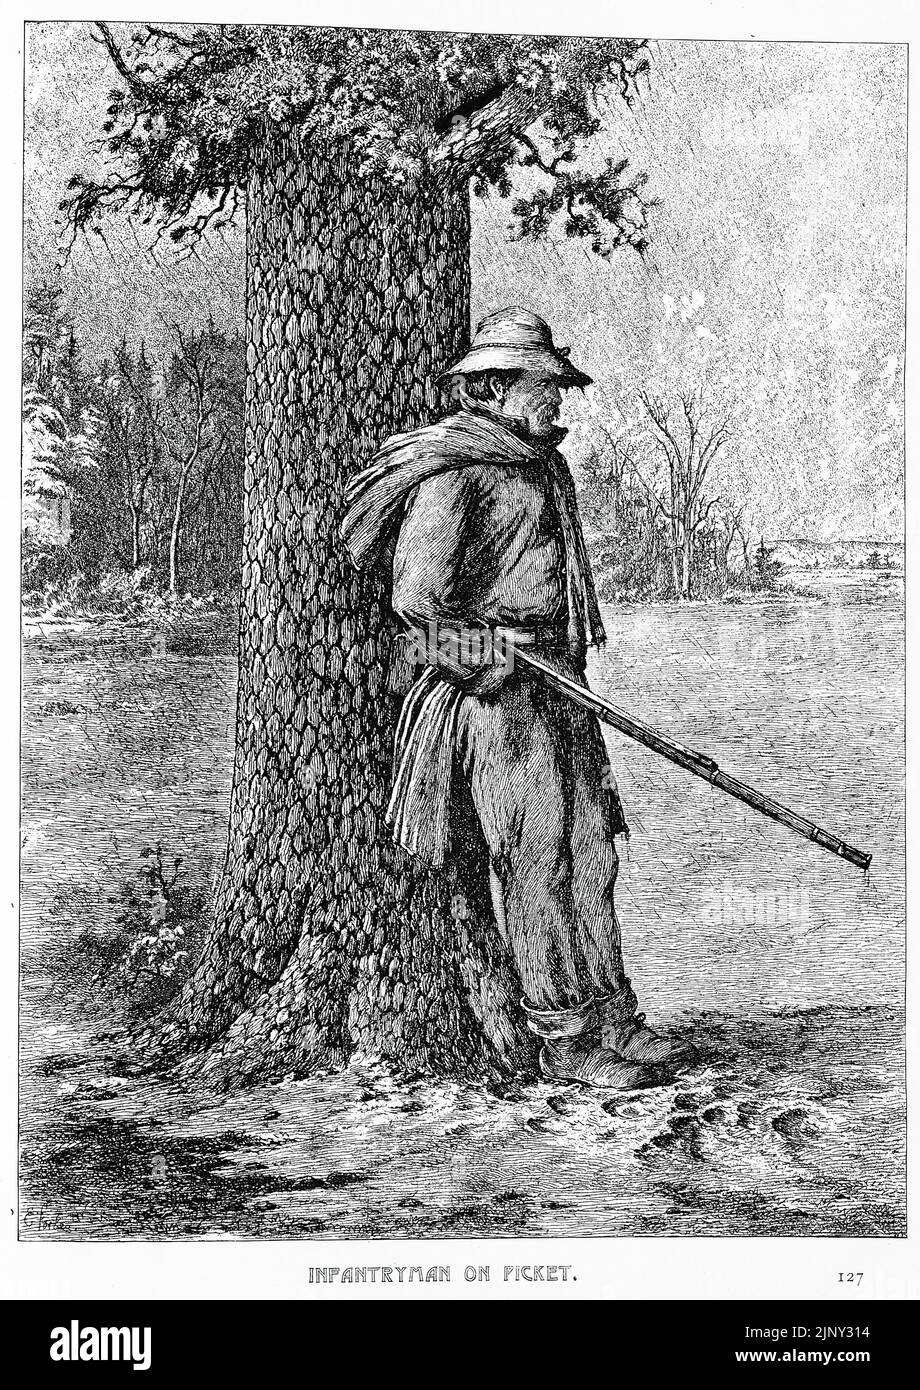 Infanterist auf einem Streikposten. Streikposten der Union Army im Regen. Illustration des amerikanischen Bürgerkriegs des 19.. Jahrhunderts von Edwin Forbes Stockfoto